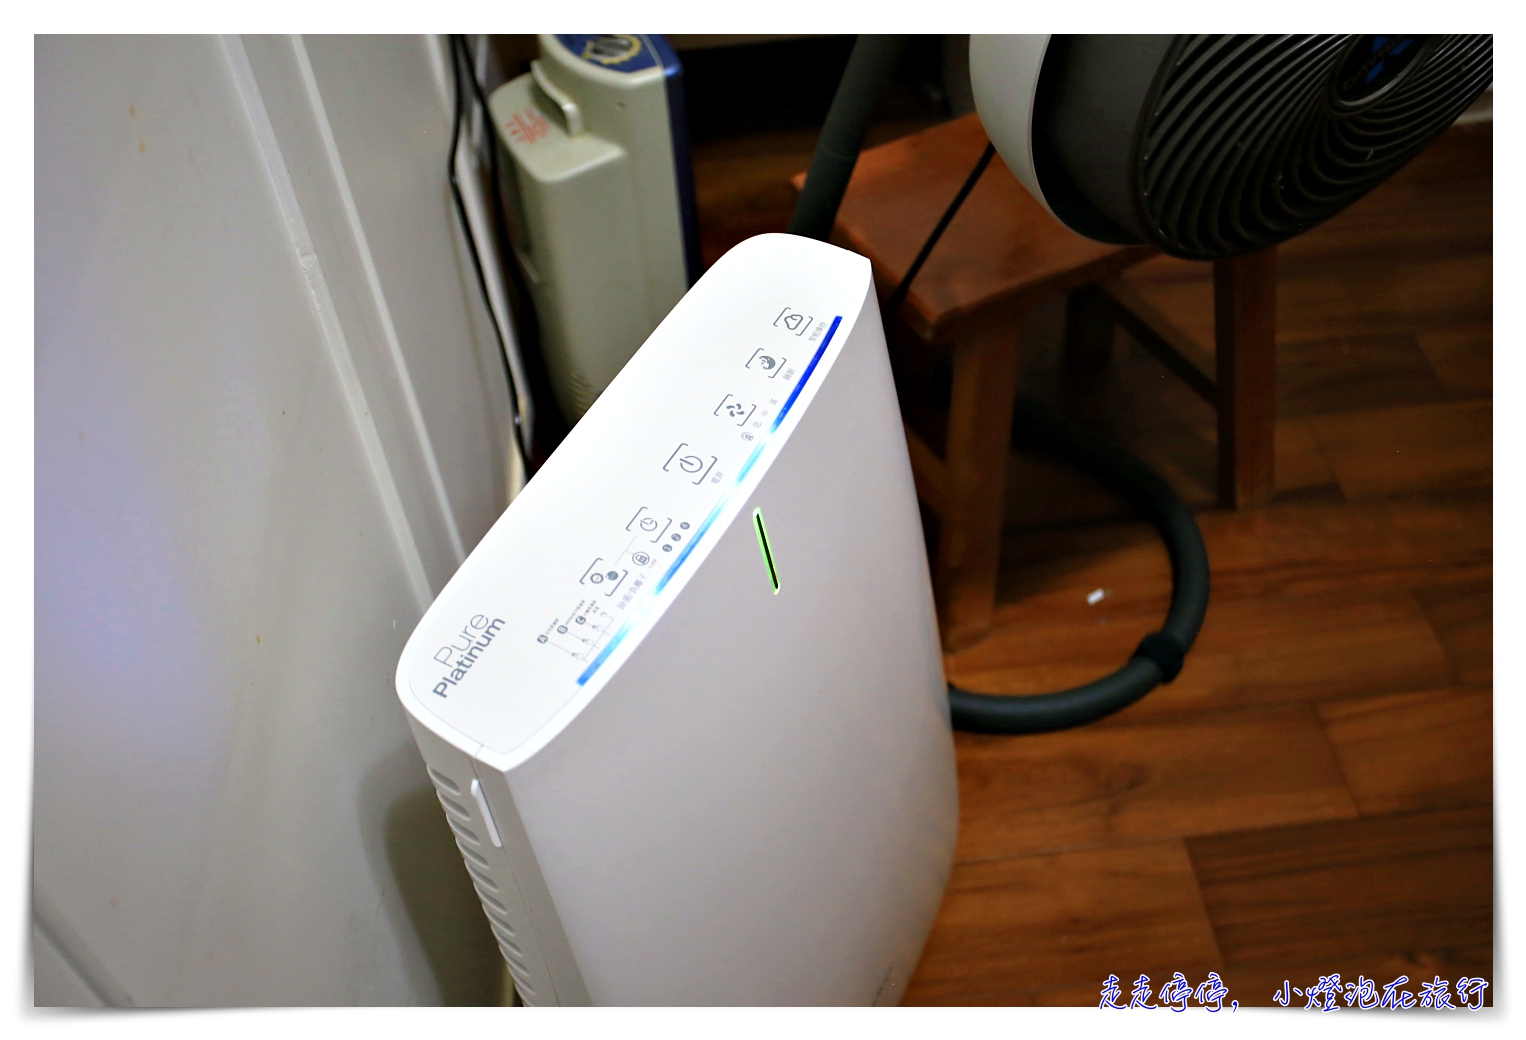 白朗峰清淨機團購｜Lasko Airpad，有效抗抵PM 2.5、HEPA過濾、智能操作，安心健康守護者！真的可以好好呼吸了！